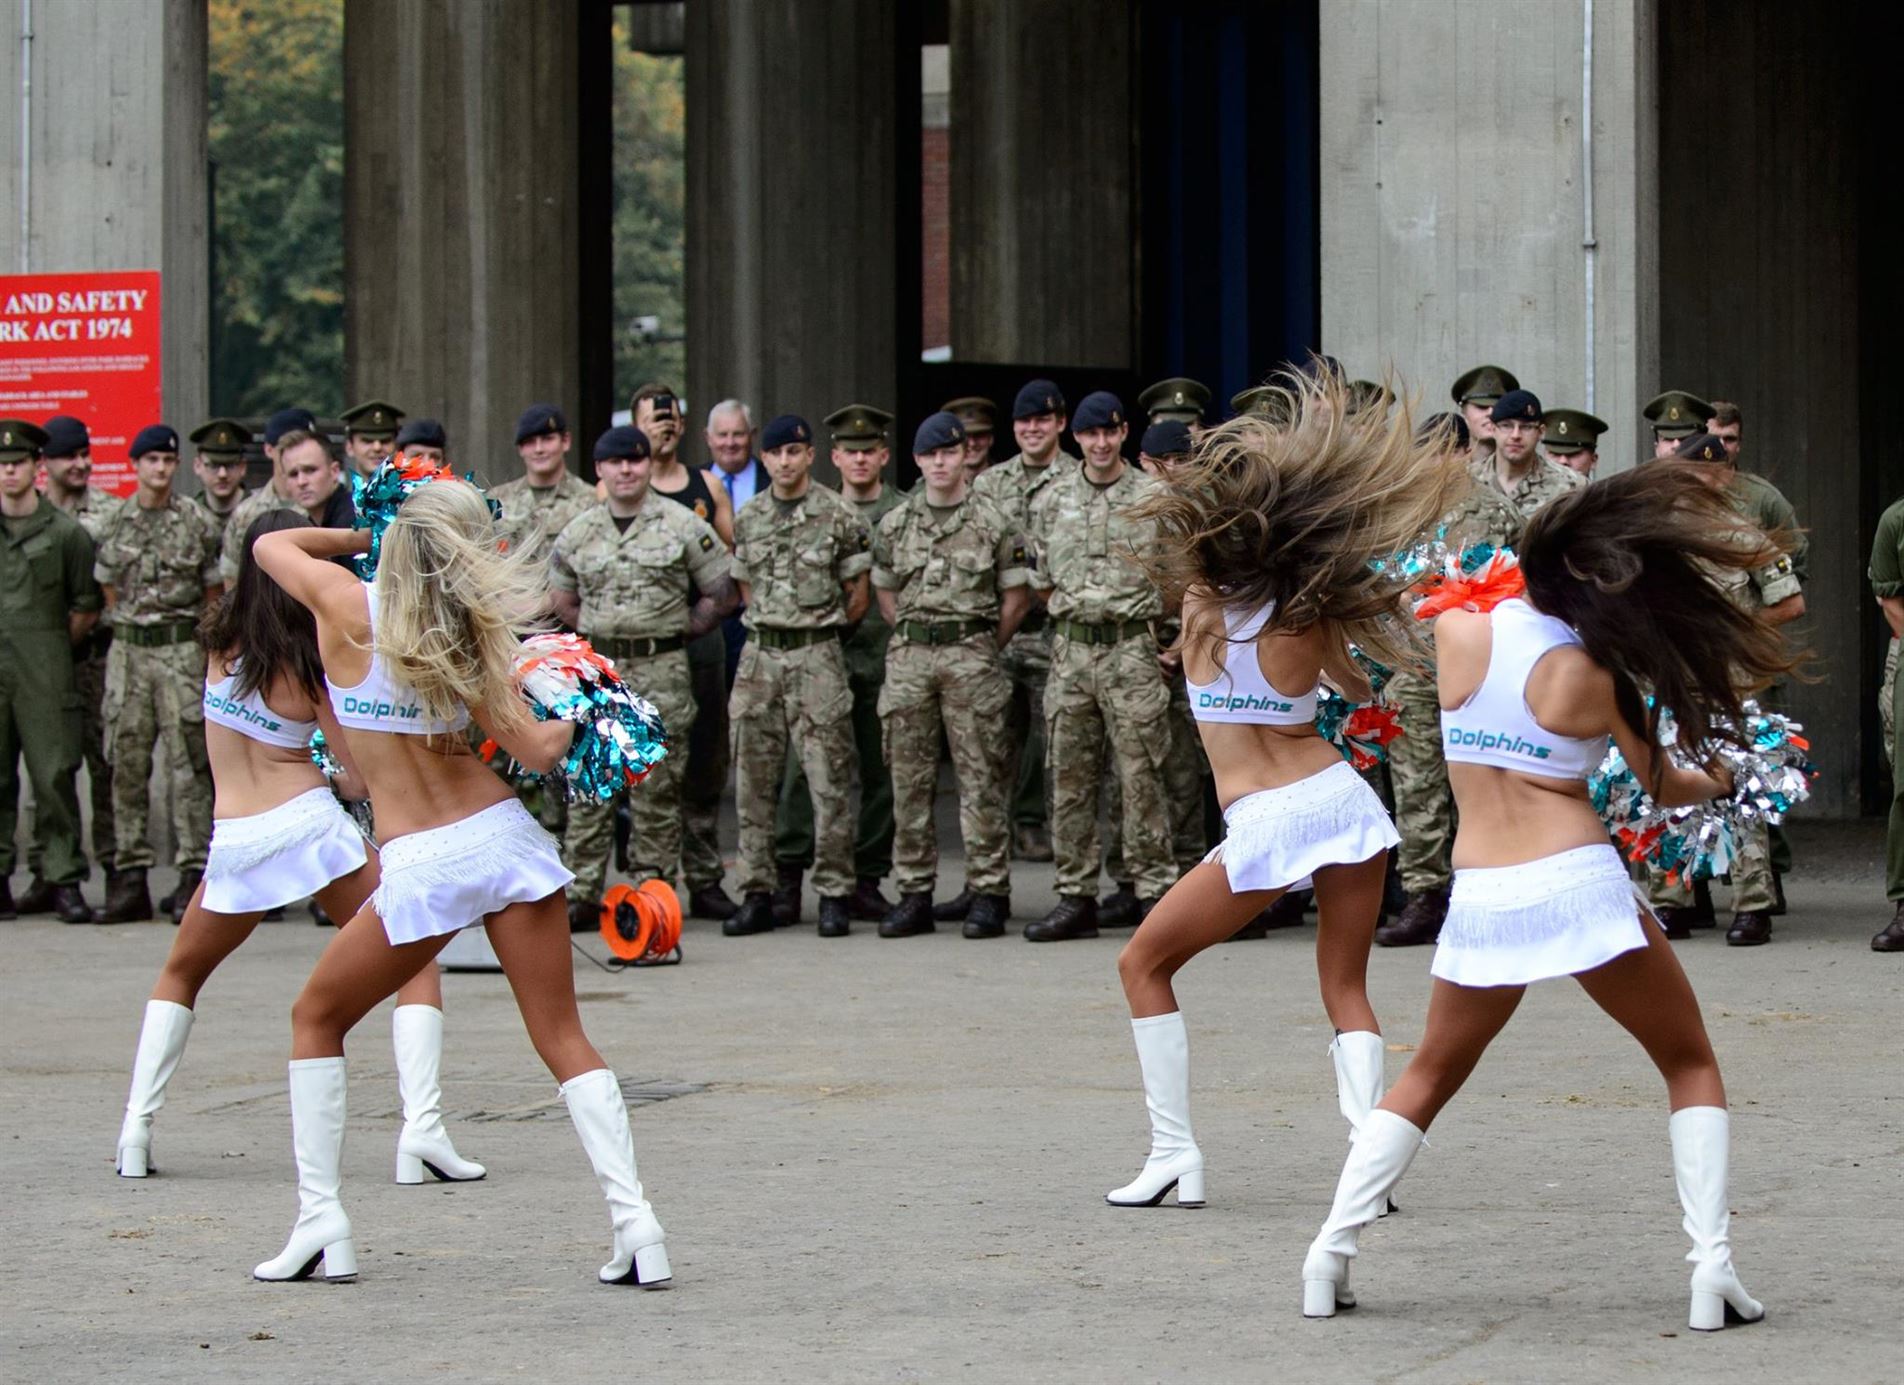 Девушки из команды чирлидинга "Miami Dolphins" танцуют перед солдатами полка Дворцовой кавалерии, Лондон, 27 сентября 2017 г.